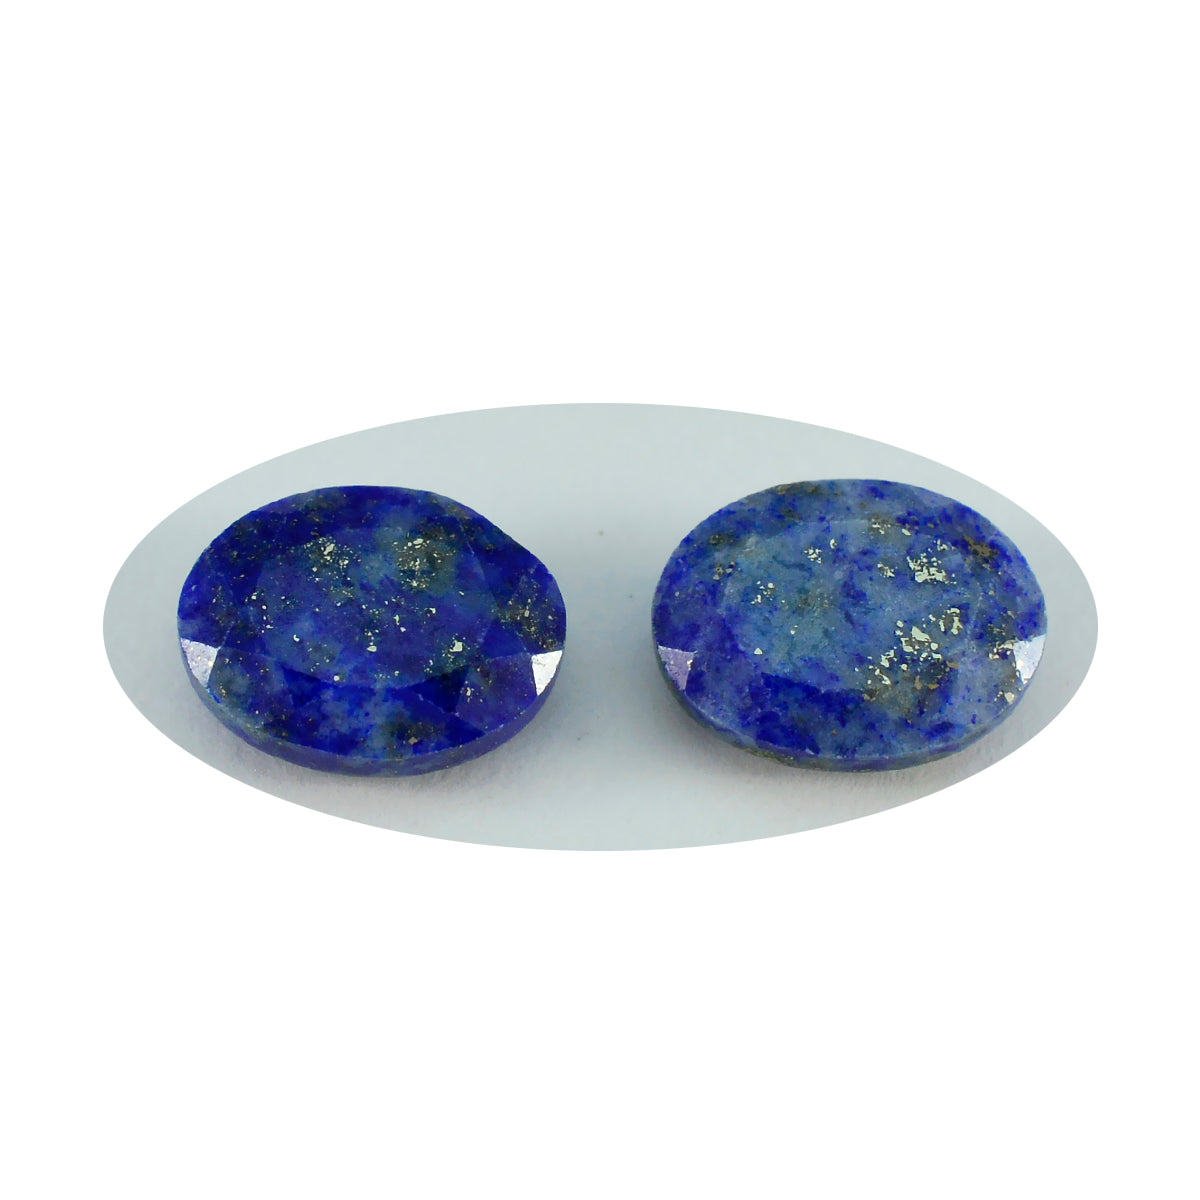 riyogems 1 pz autentico lapislazzuli blu sfaccettato 7x9 mm forma ovale pietra preziosa di qualità dall'aspetto gradevole